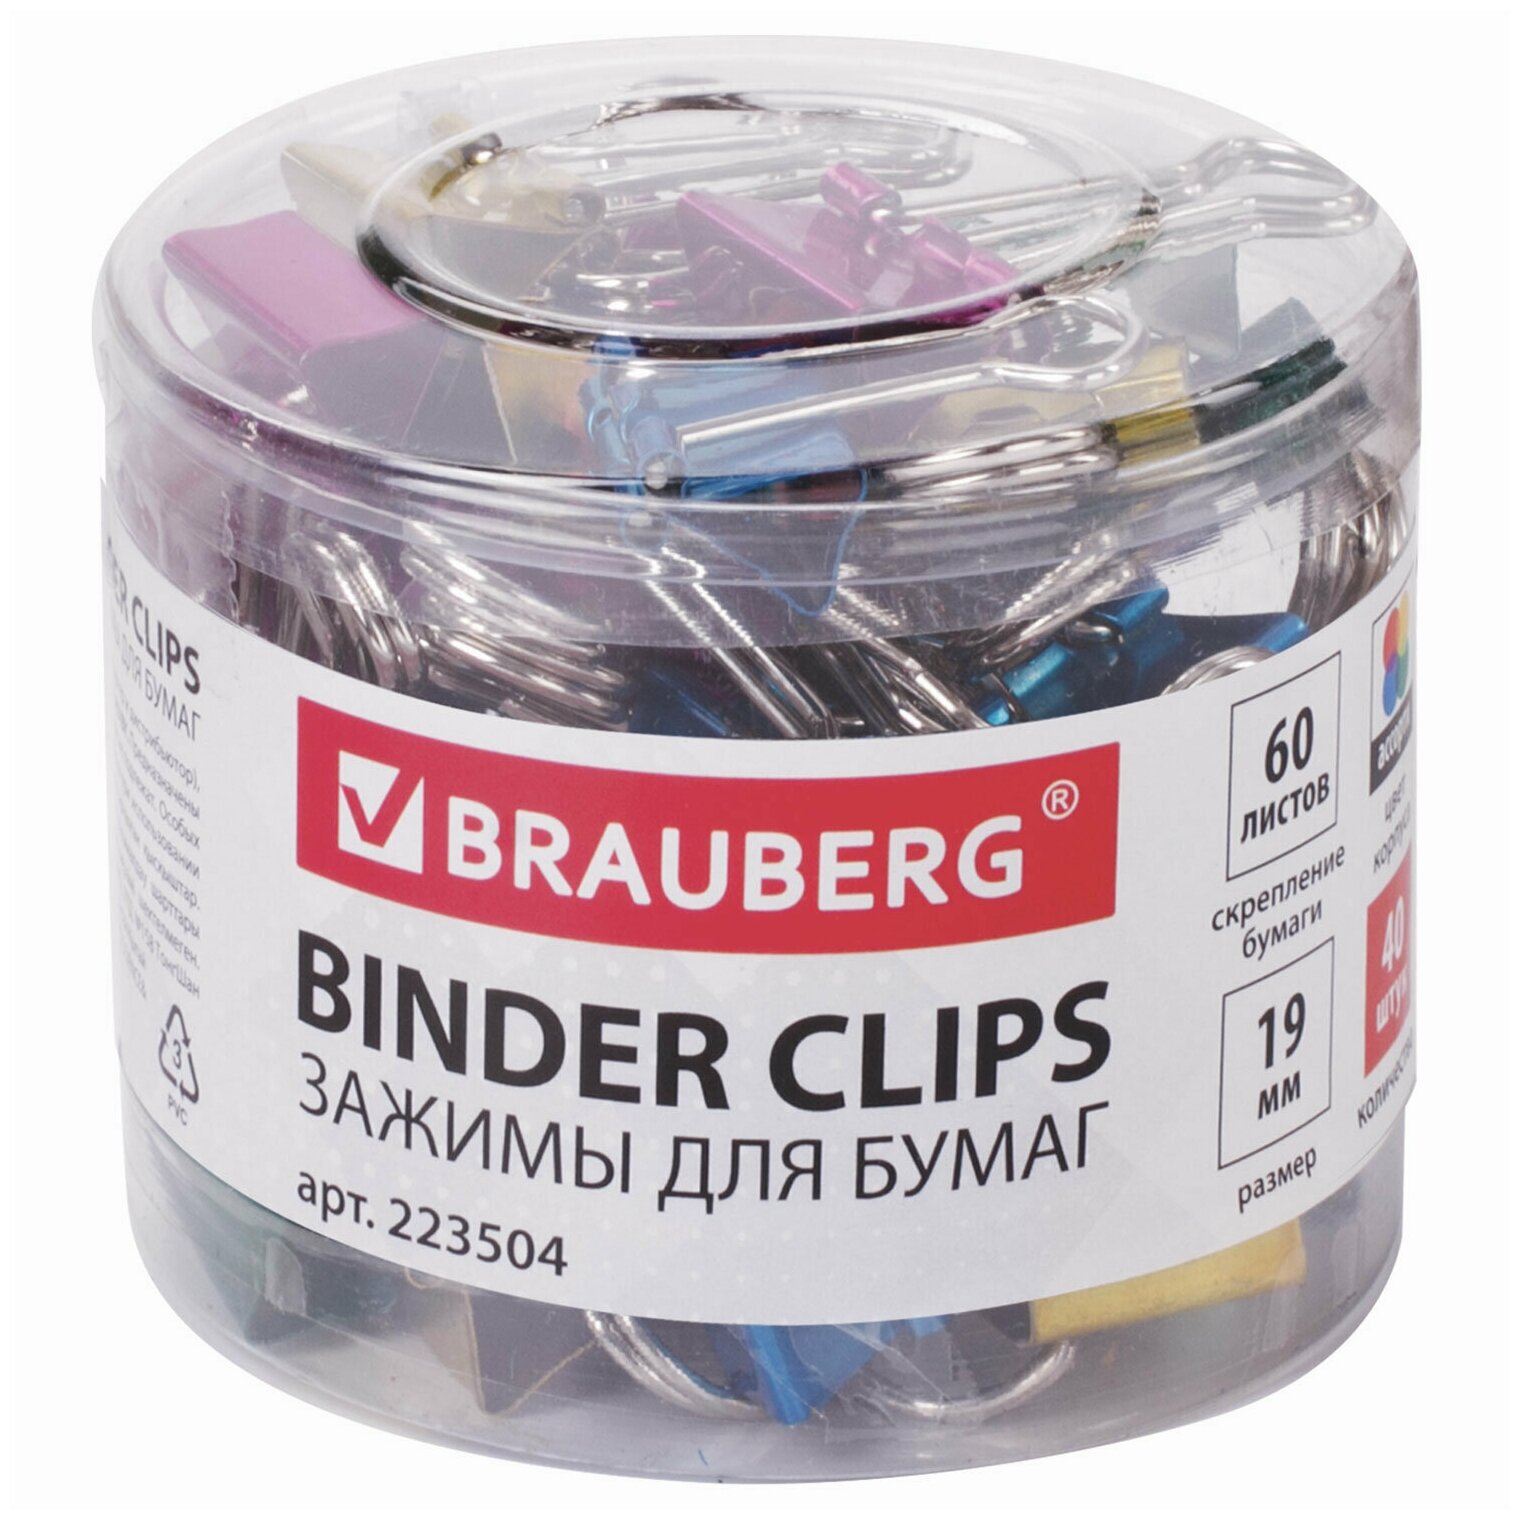 Зажимы для бумаг BRAUBERG, комплект 40 шт, 19 мм, на 60 листов, цвет металлик, пластиковый цилиндр, 223504